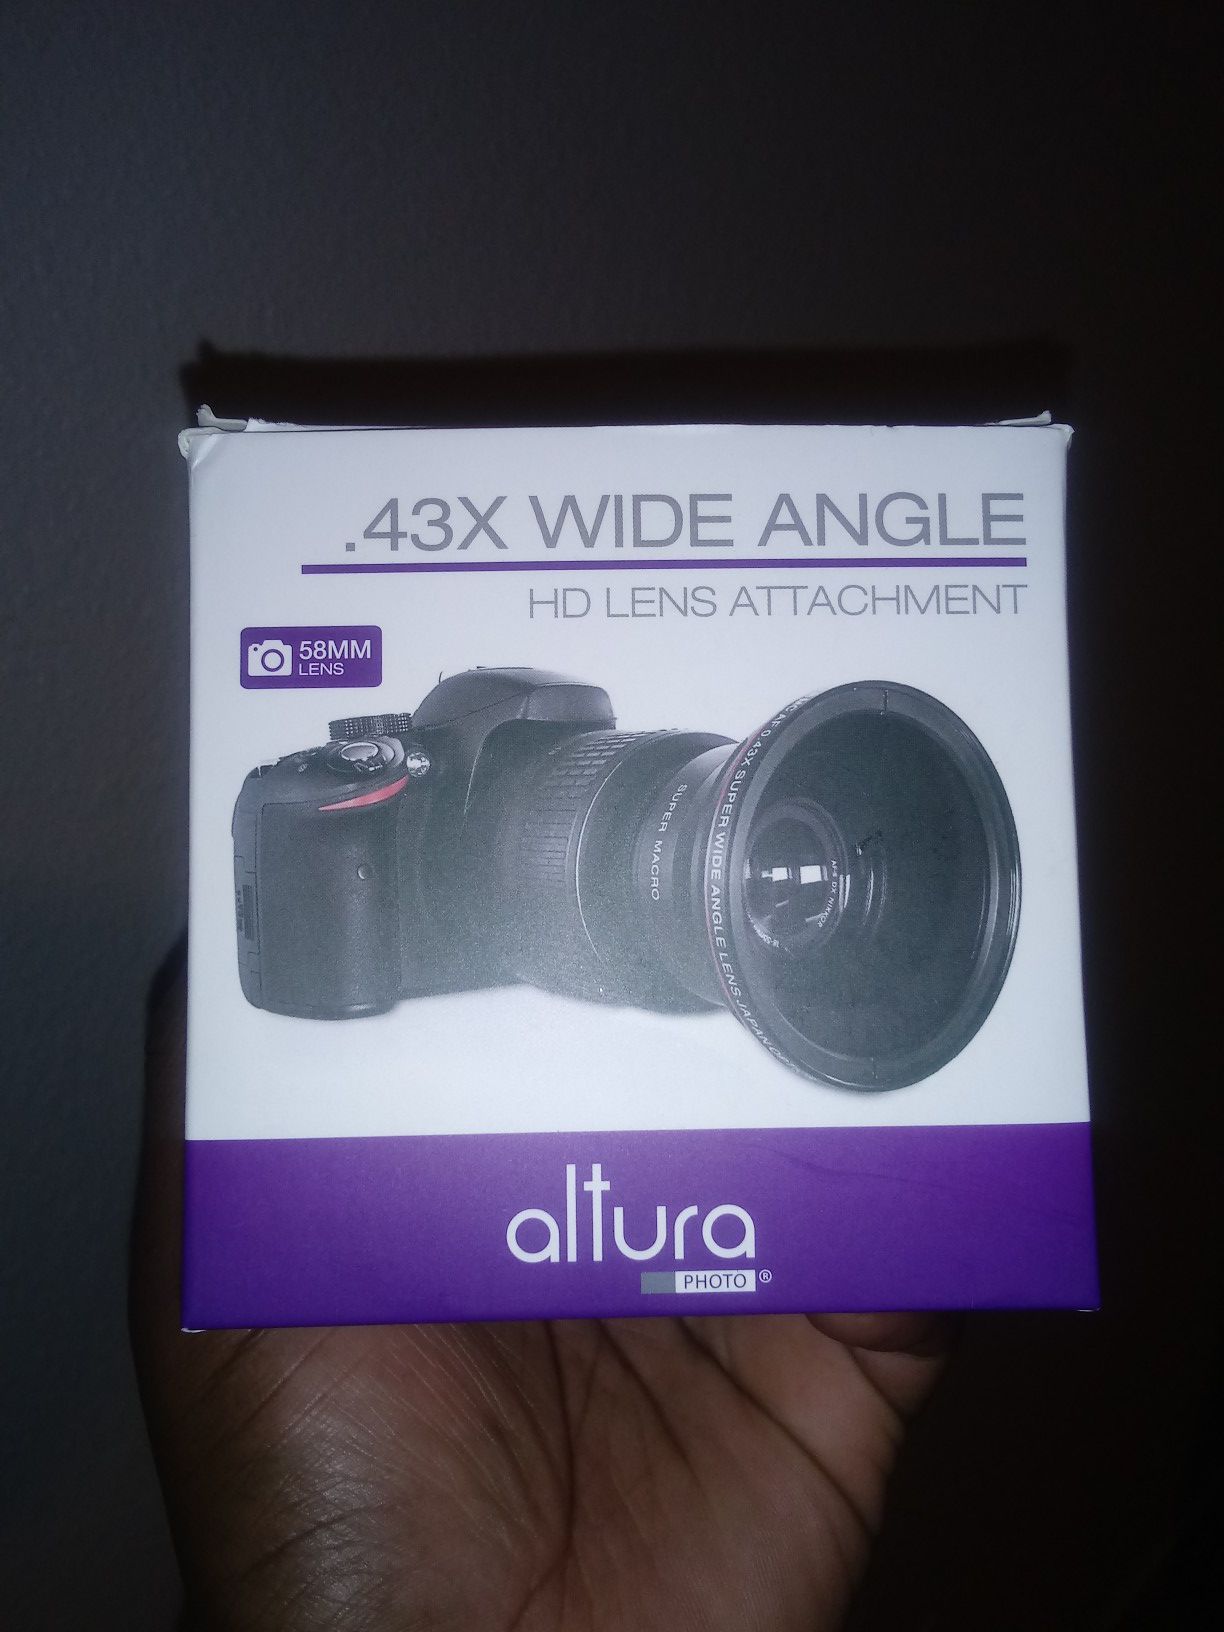 Wide angle lens